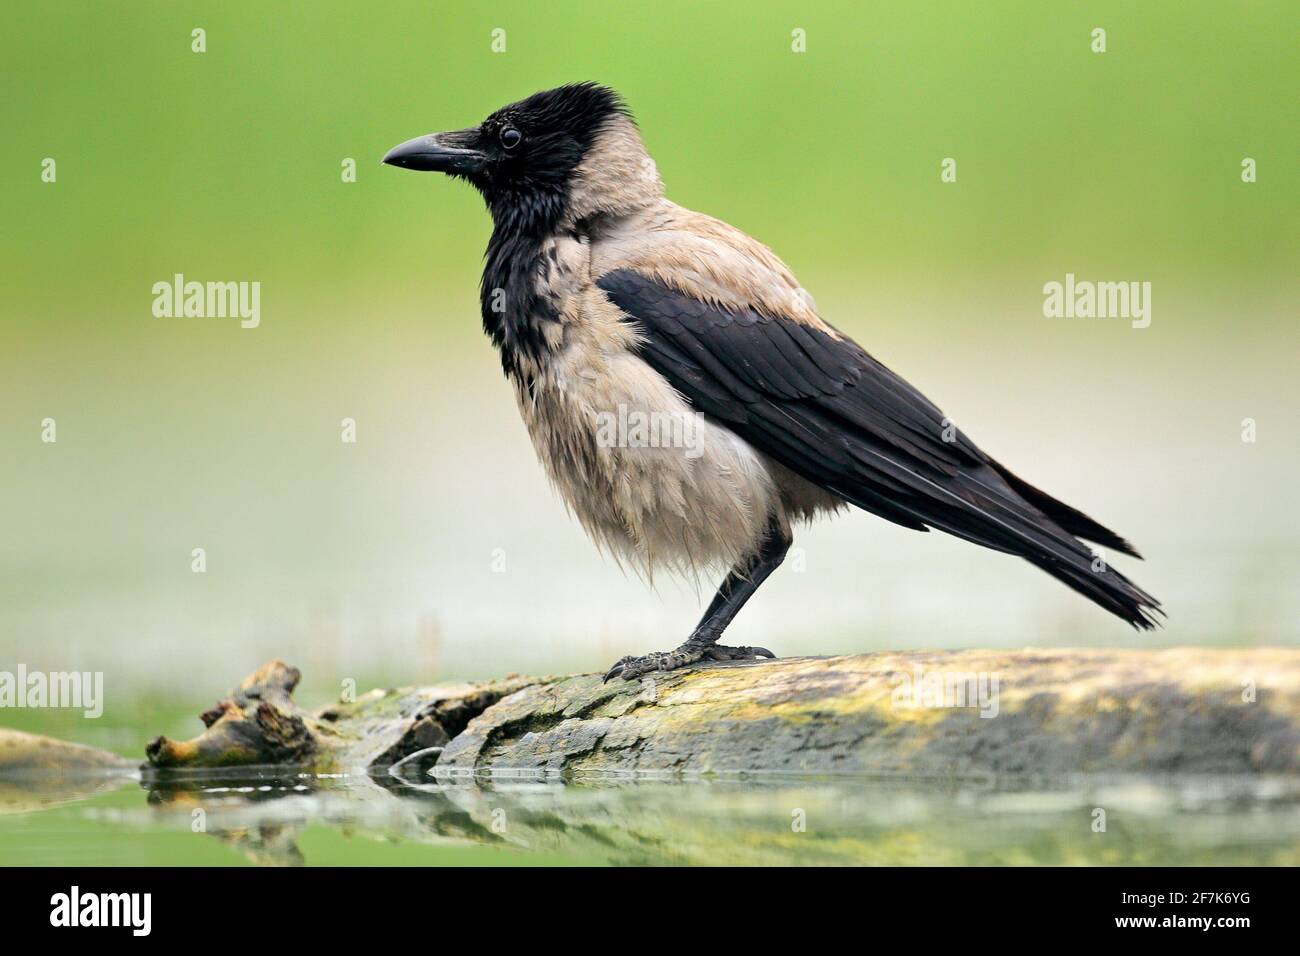 Krähe mit Kapuze, Corvus cornix, schwarzer und grauer Vogel im Naturlebensraum. Vogel, der im Wasser auf dem Baumstamm sitzt. Krähe aus Ungarn. Stockfoto